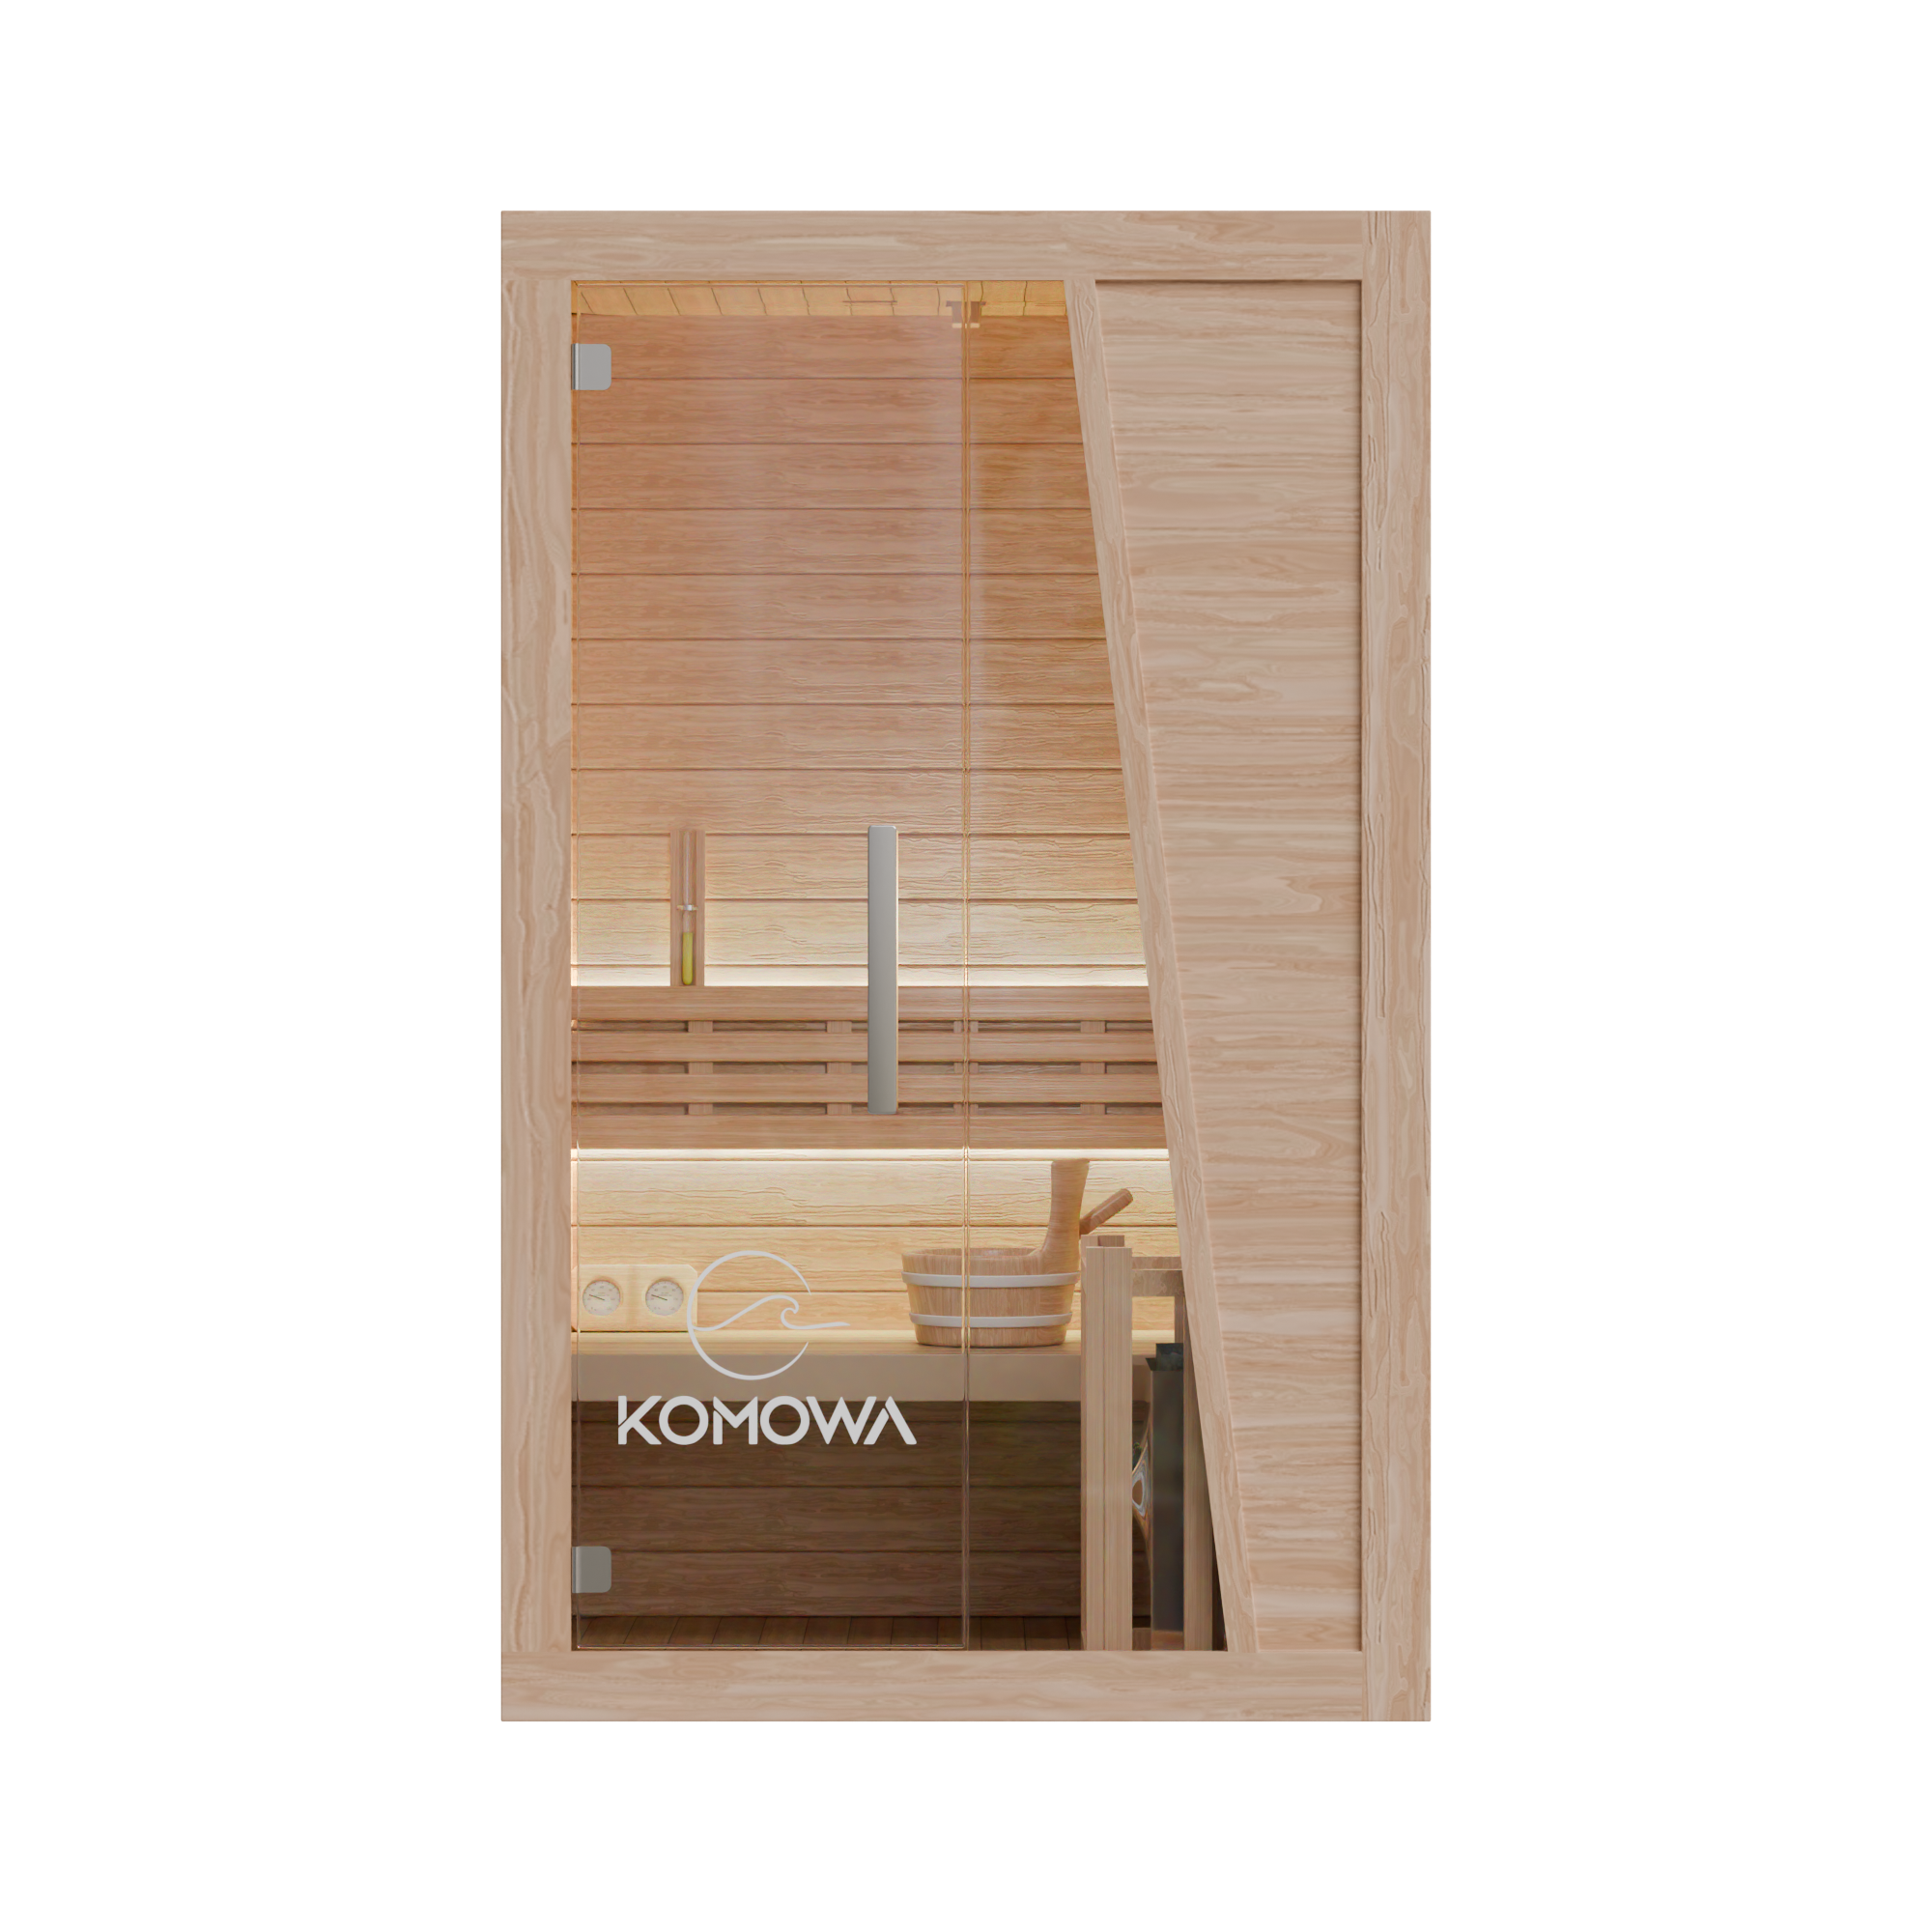 Komowa Garda Series Traditional Sauna